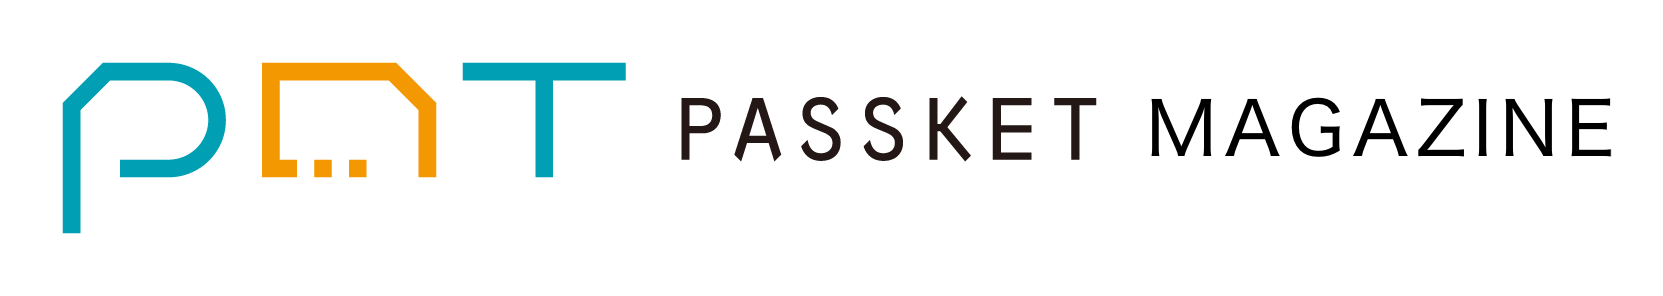 PASSKET MAGAZINE | パスケット マガジン logo